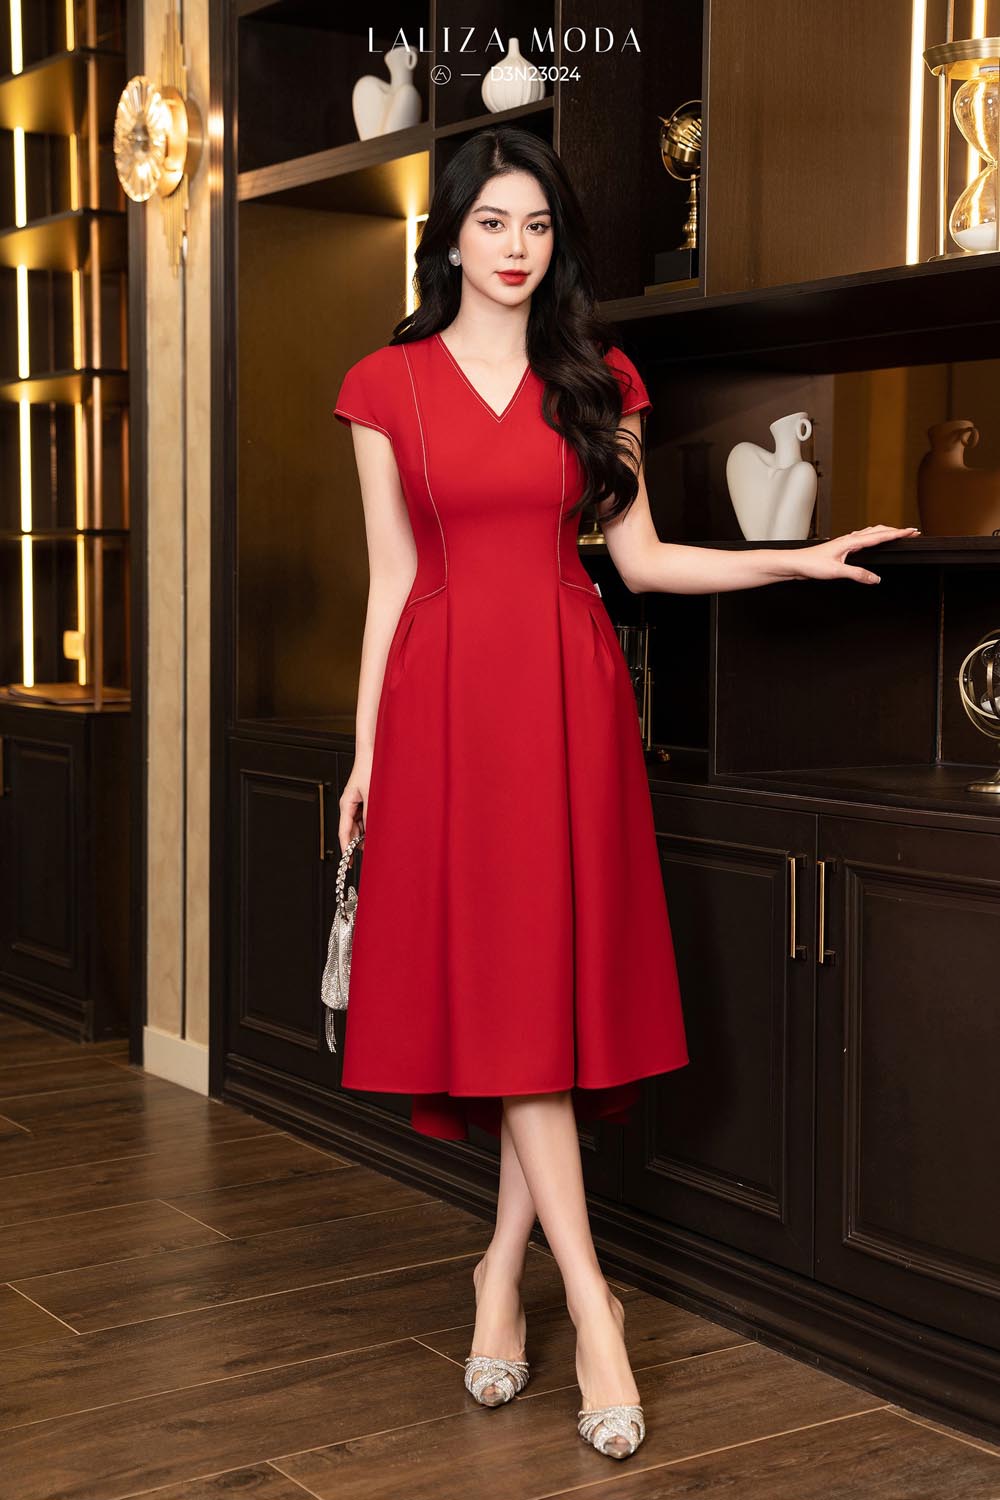 Những mẫu váy đỏ giúp nàng nổi bật trong dịp lễ hội cuối năm  IVY moda